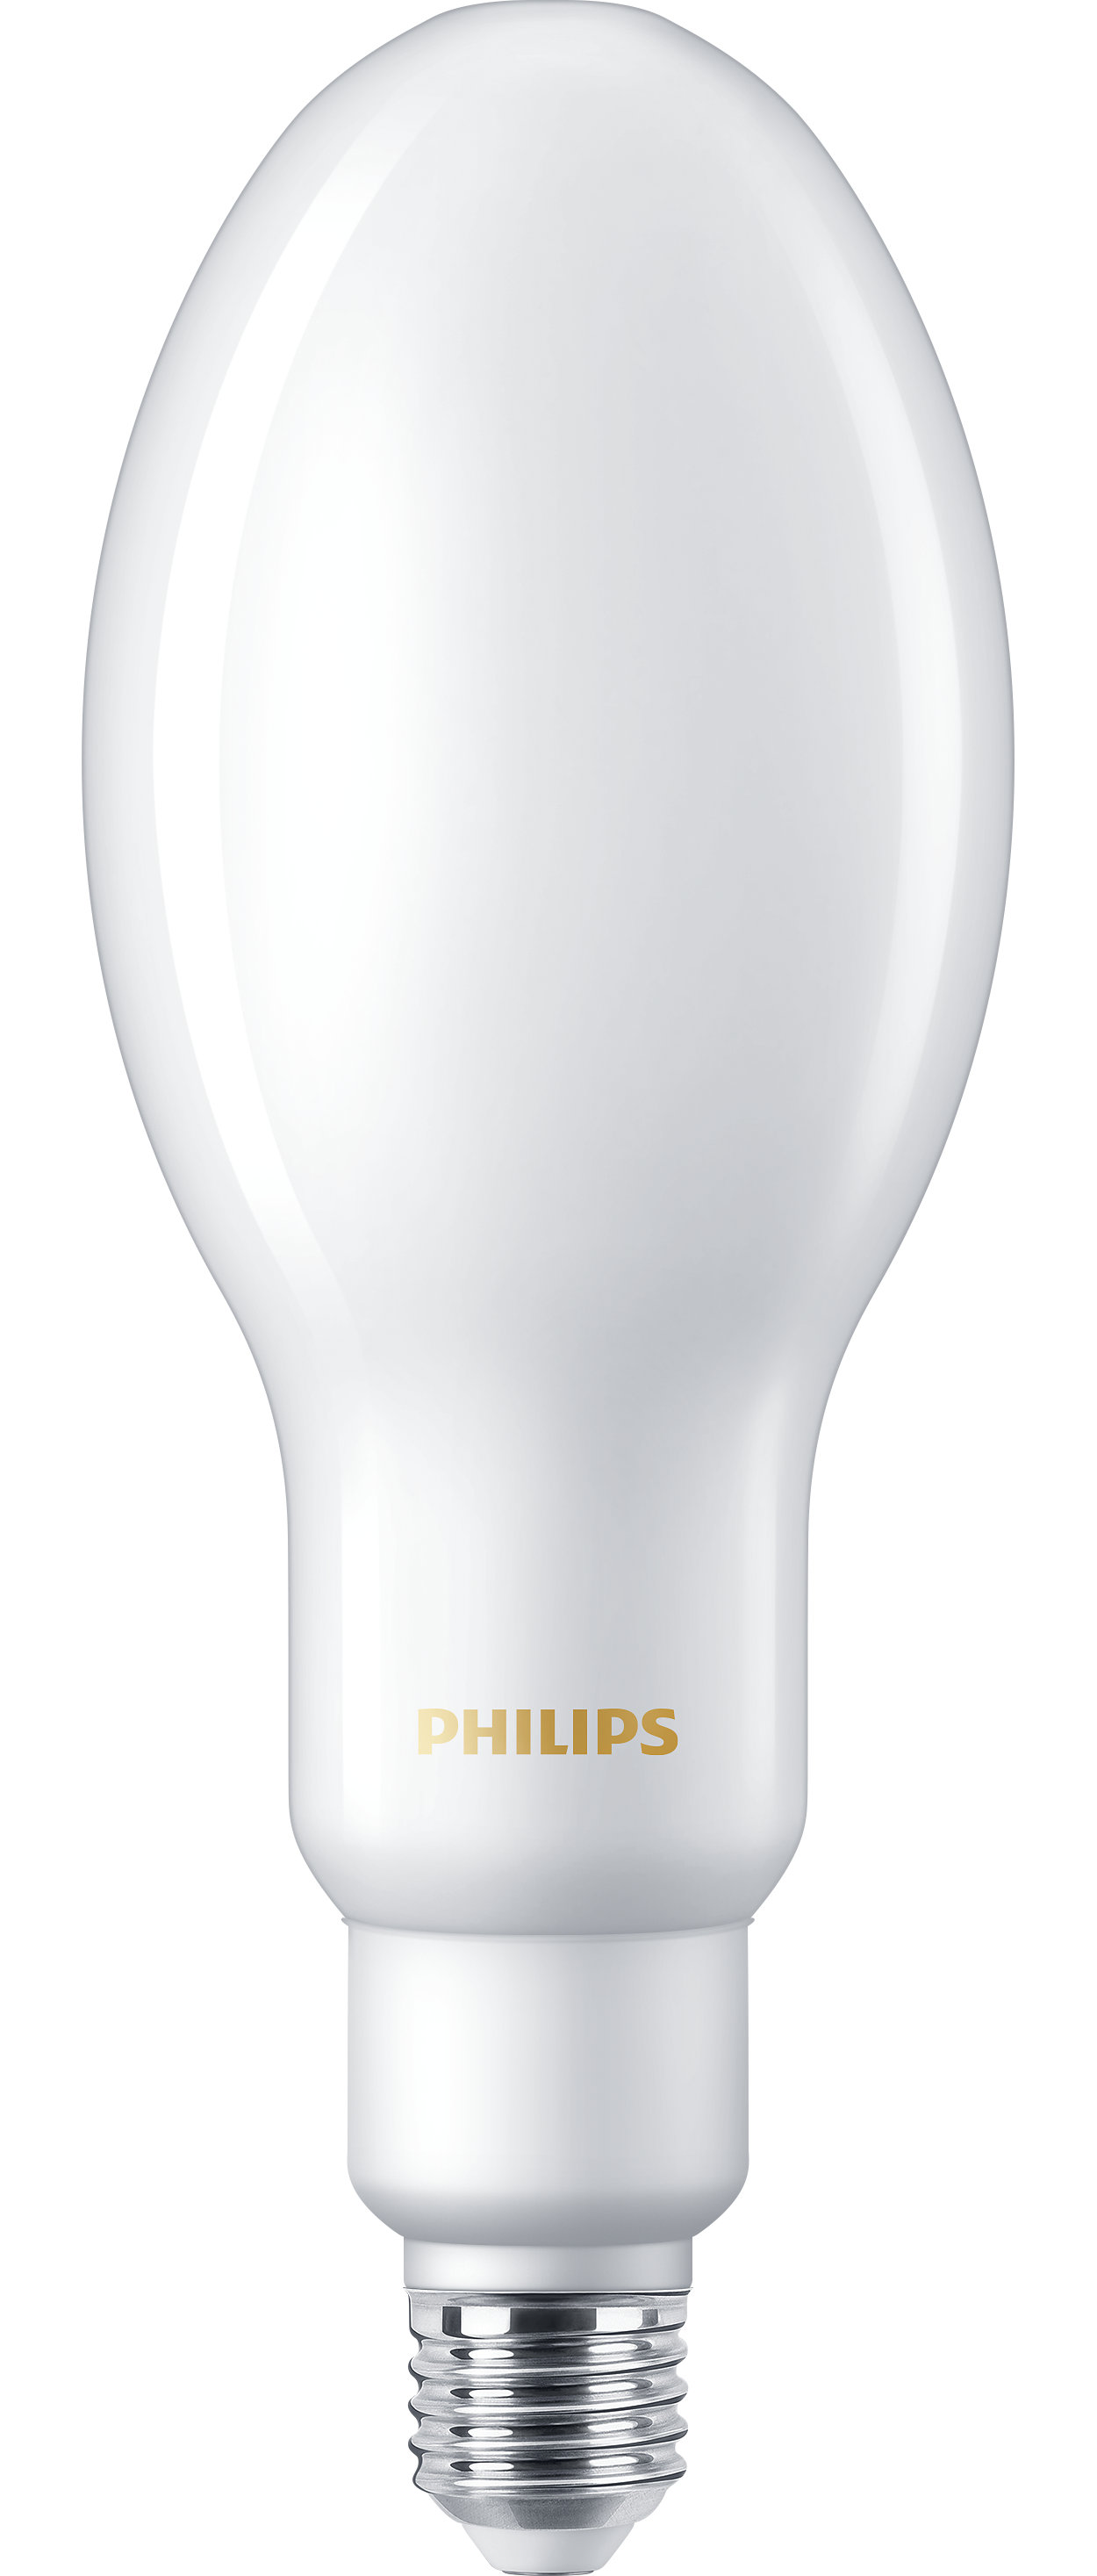 全新 LED HPL 解决方案，用于替换 HID 灯具，满足您的日常照明需求